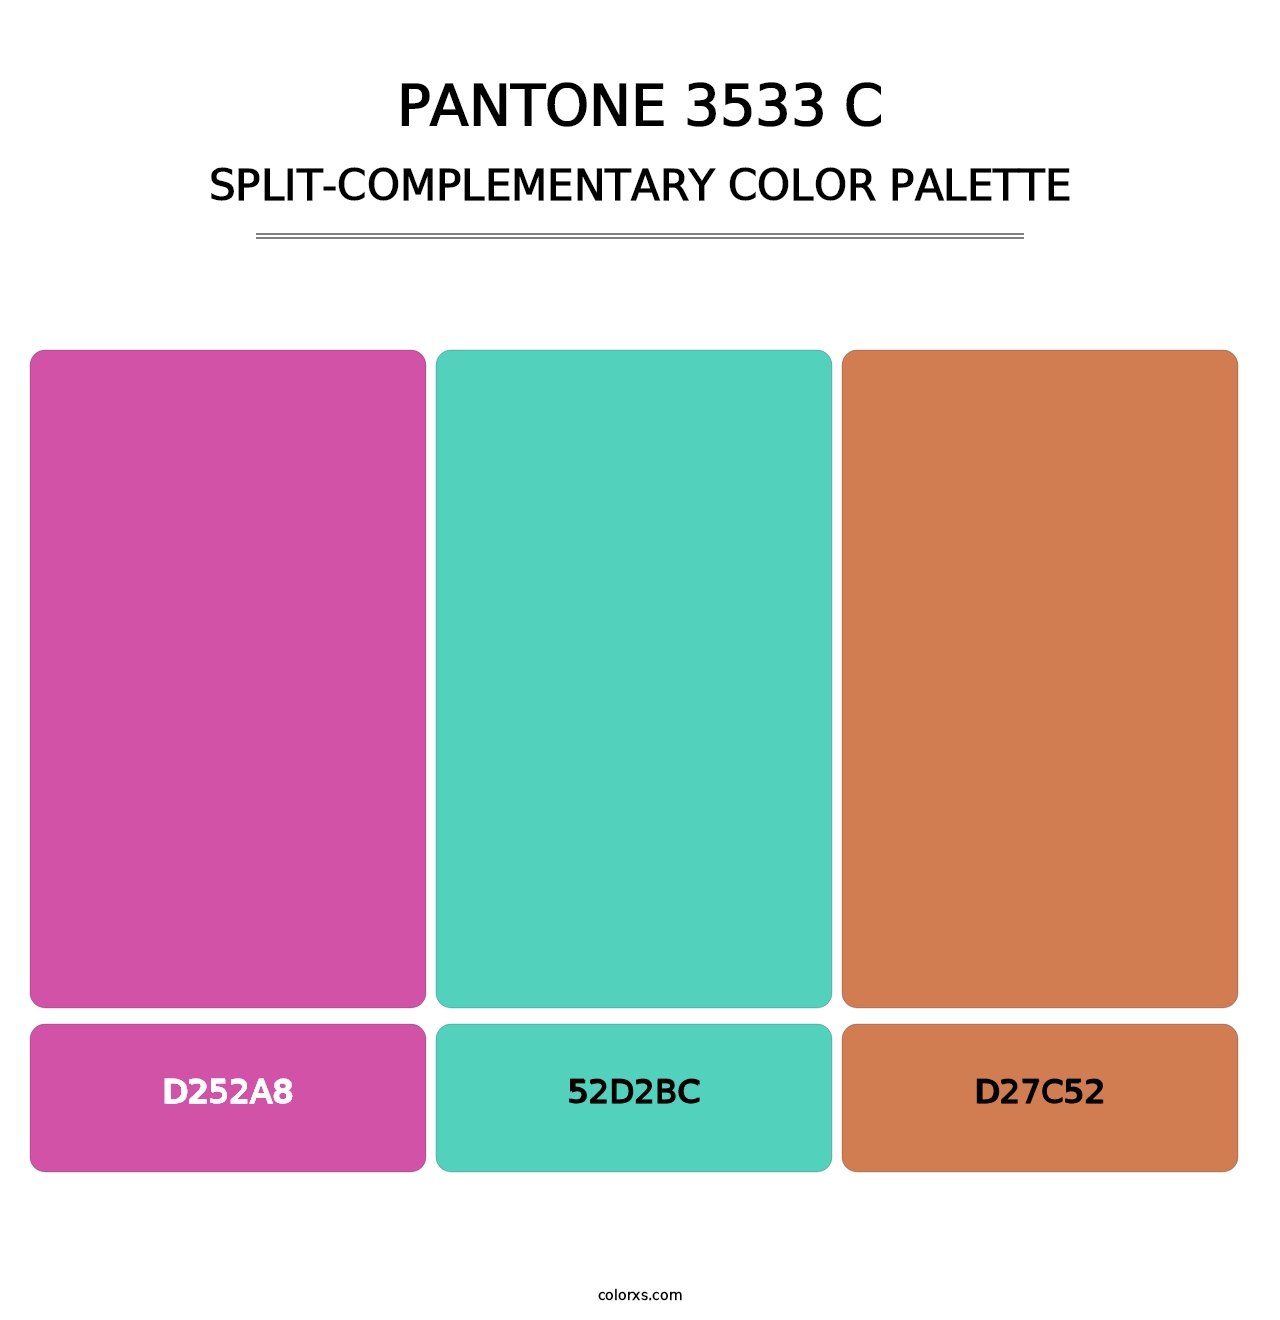 PANTONE 3533 C - Split-Complementary Color Palette